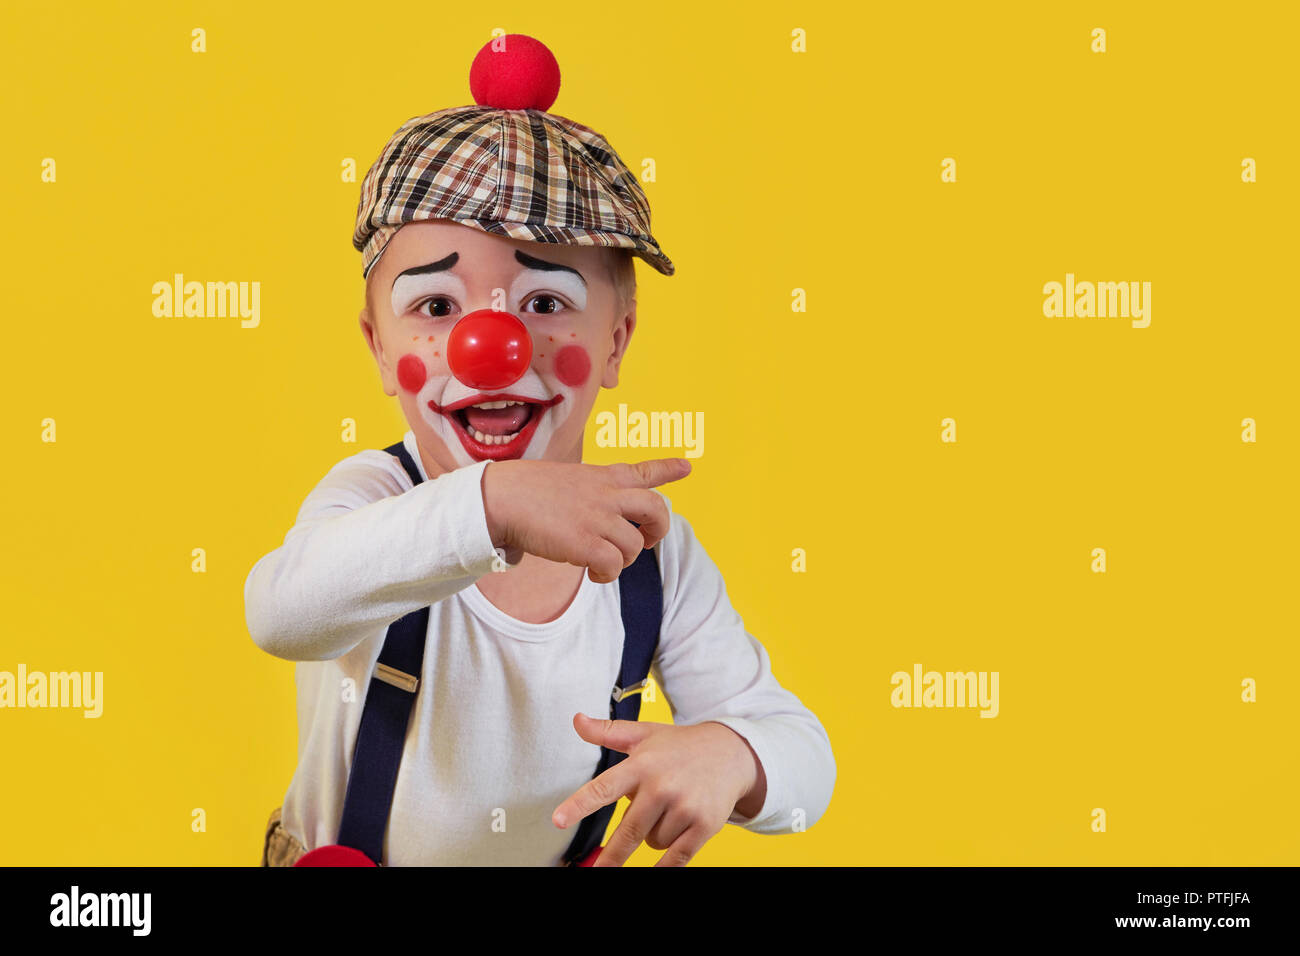 Birthday child clown immagini e fotografie stock ad alta risoluzione - Alamy